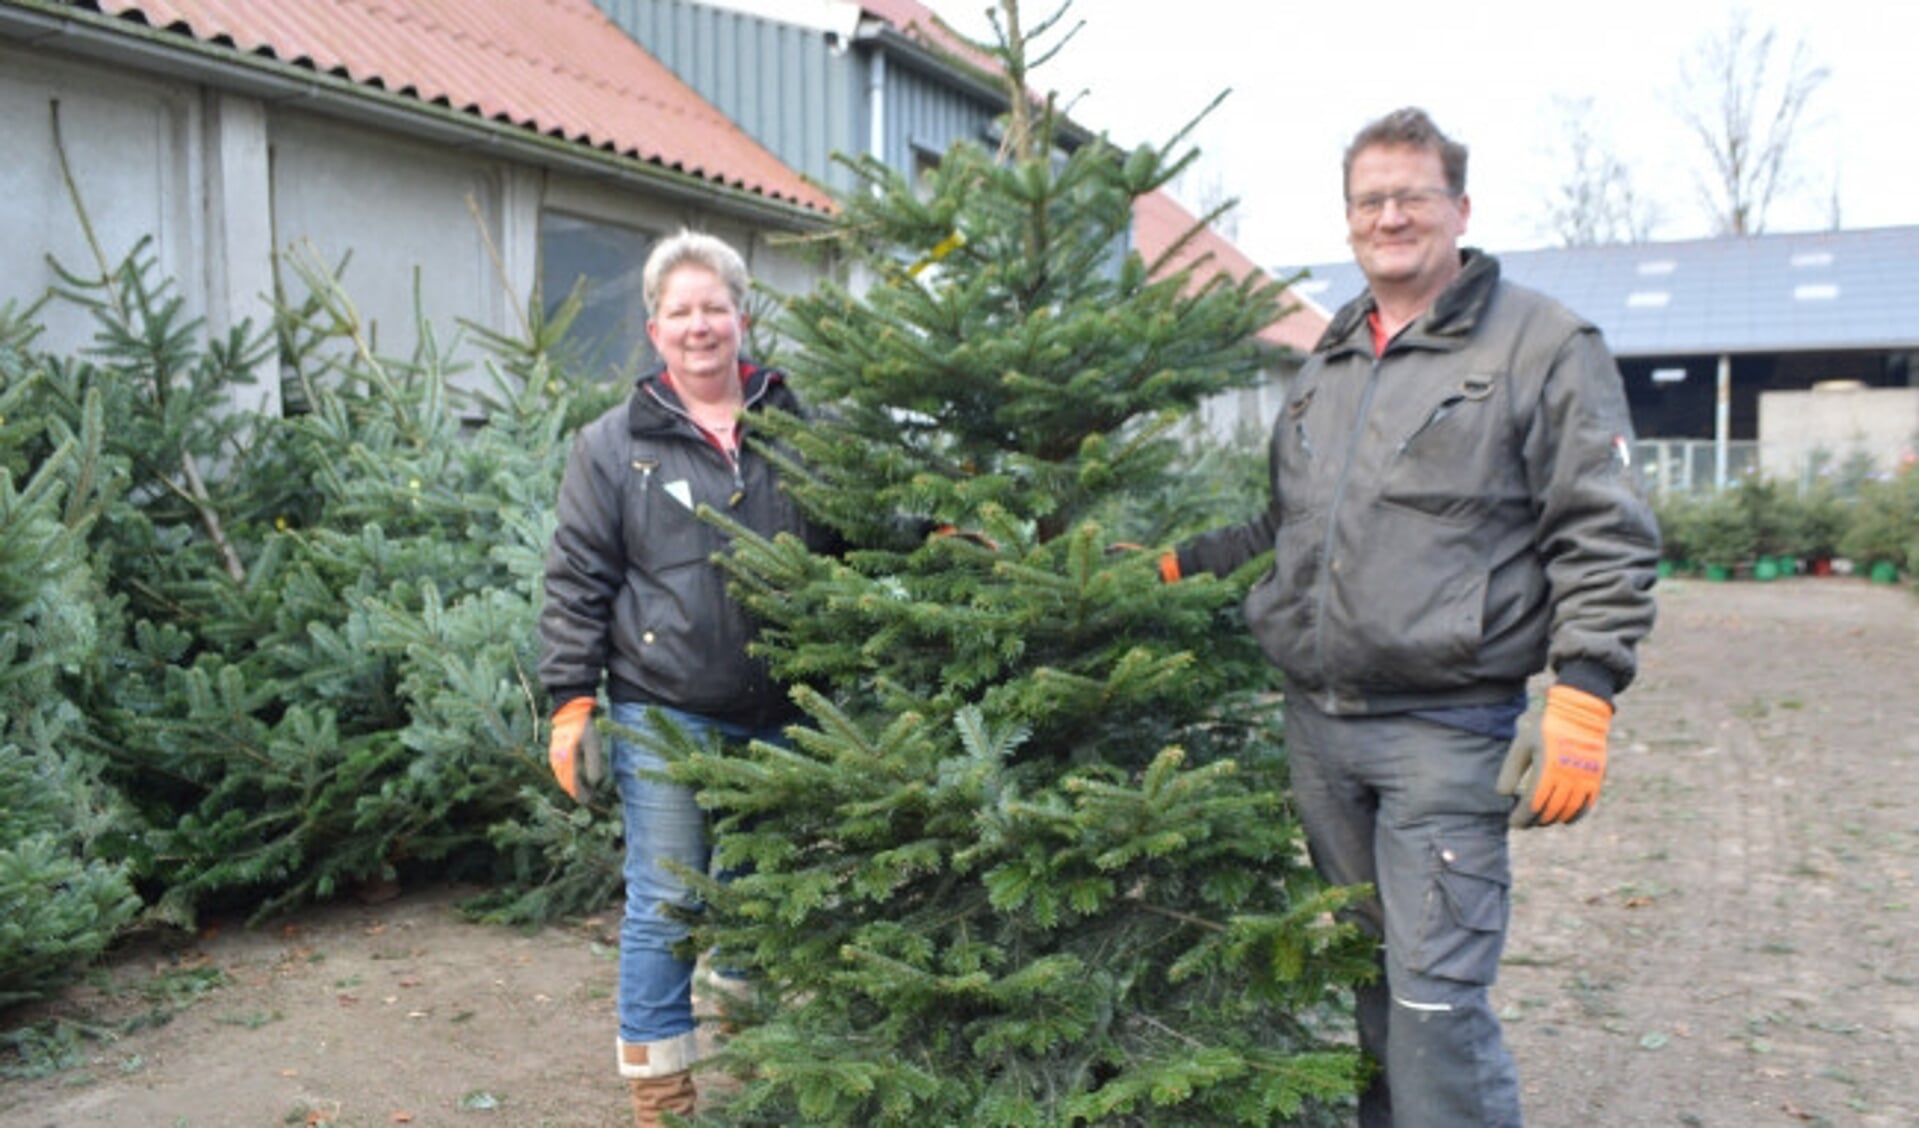 Poëzie Definitief Potentieel Tineke Post: ,,Mensen willen tegenwoordig de hele maand december een  kerstboom'' - De Drontenaar | Nieuws uit de regio Dronten